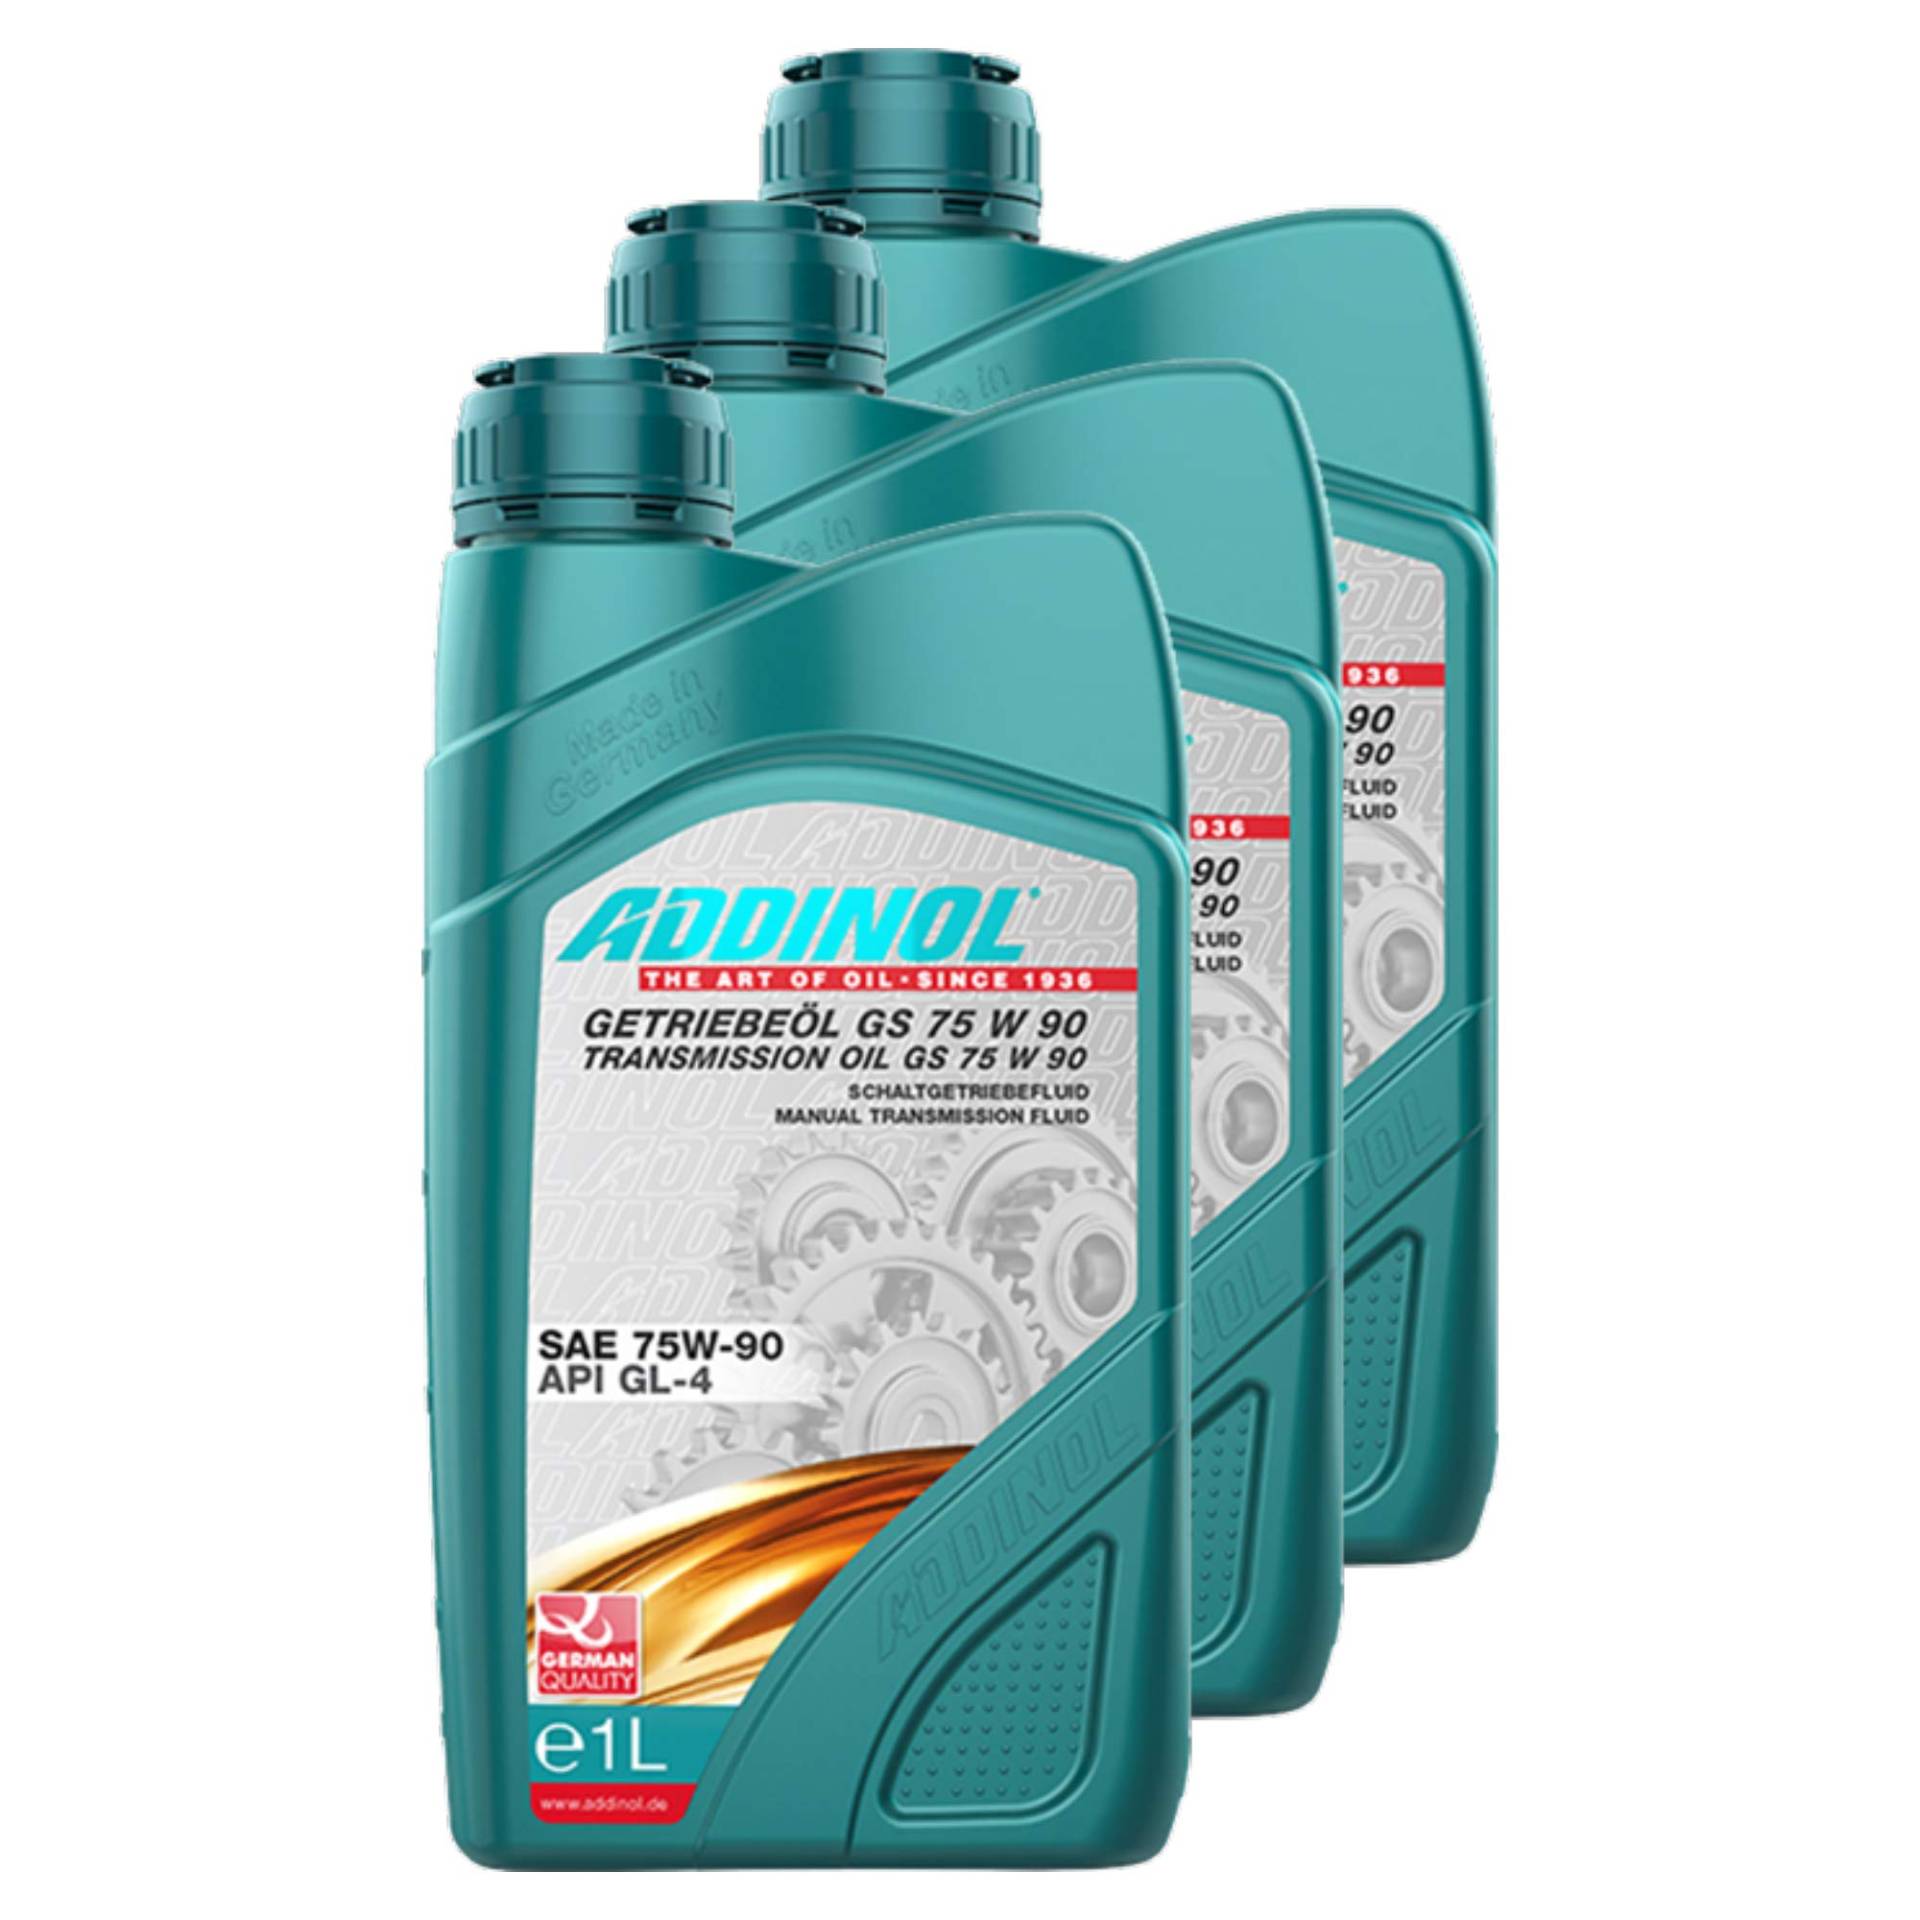 3X Addinol Getriebeöl Gear Transmission Oil Fluid Lubricant 75W-90 Gs 75 W 90 1L 74200707 von Addinol